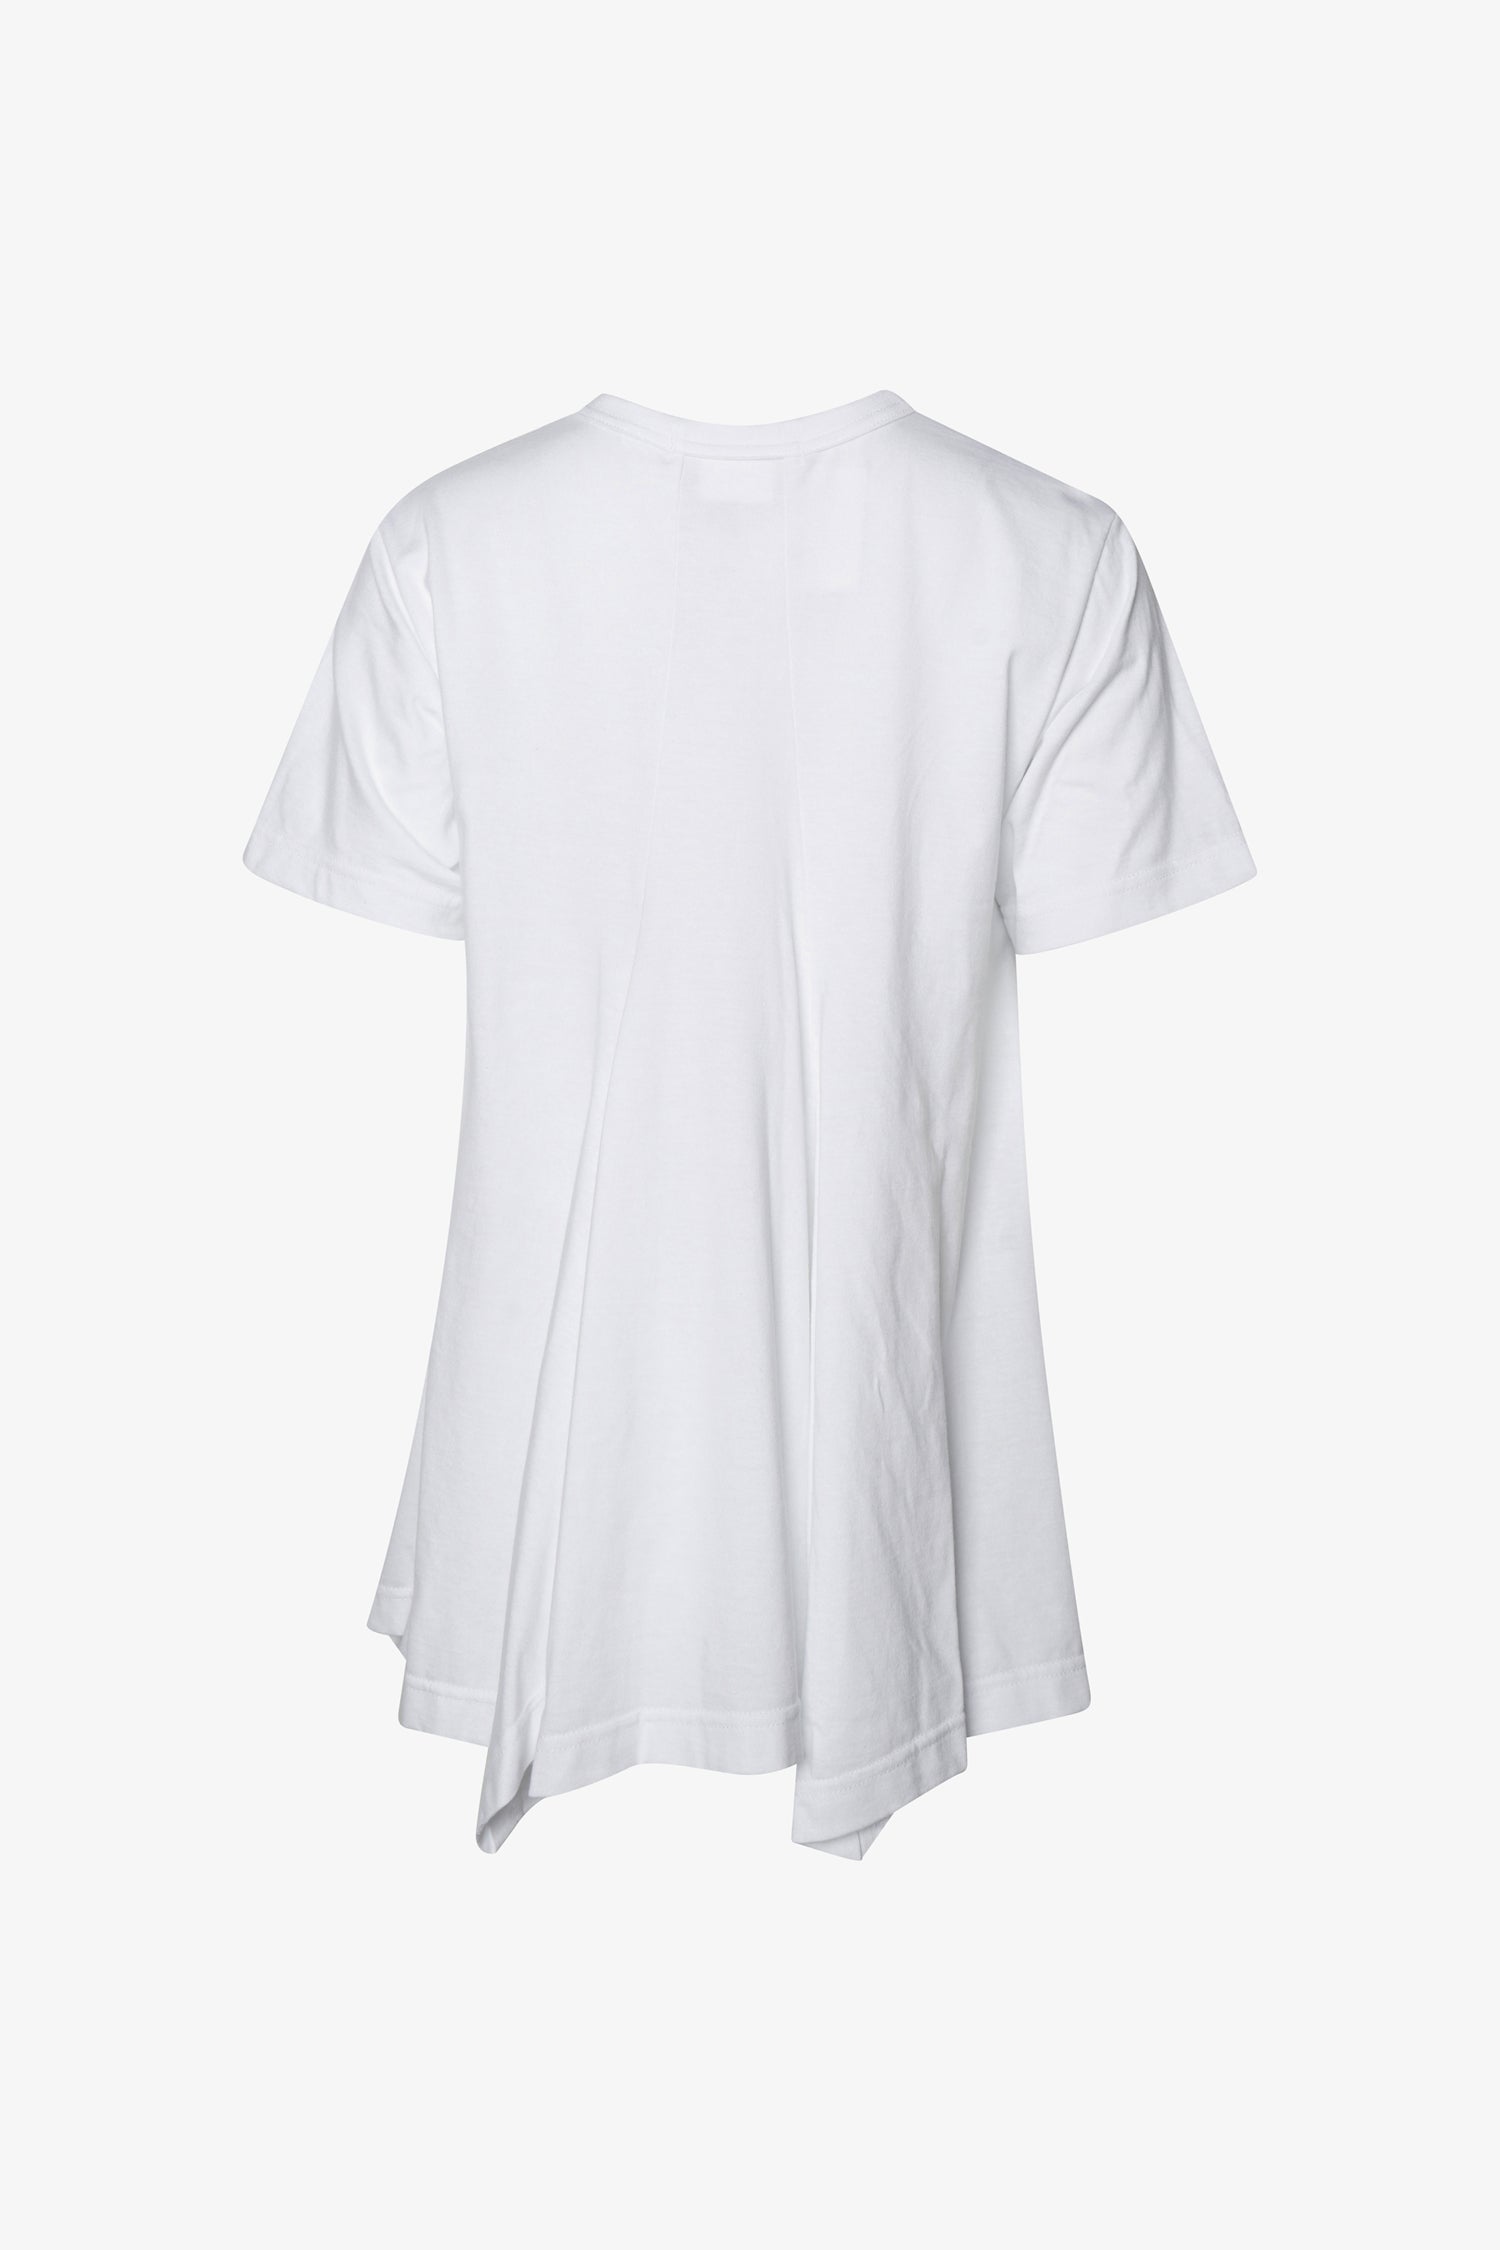 Selectshop FRAME - COMME DES GARÇONS Handkerchief-Hem T-Shirt T-Shirts Dubai